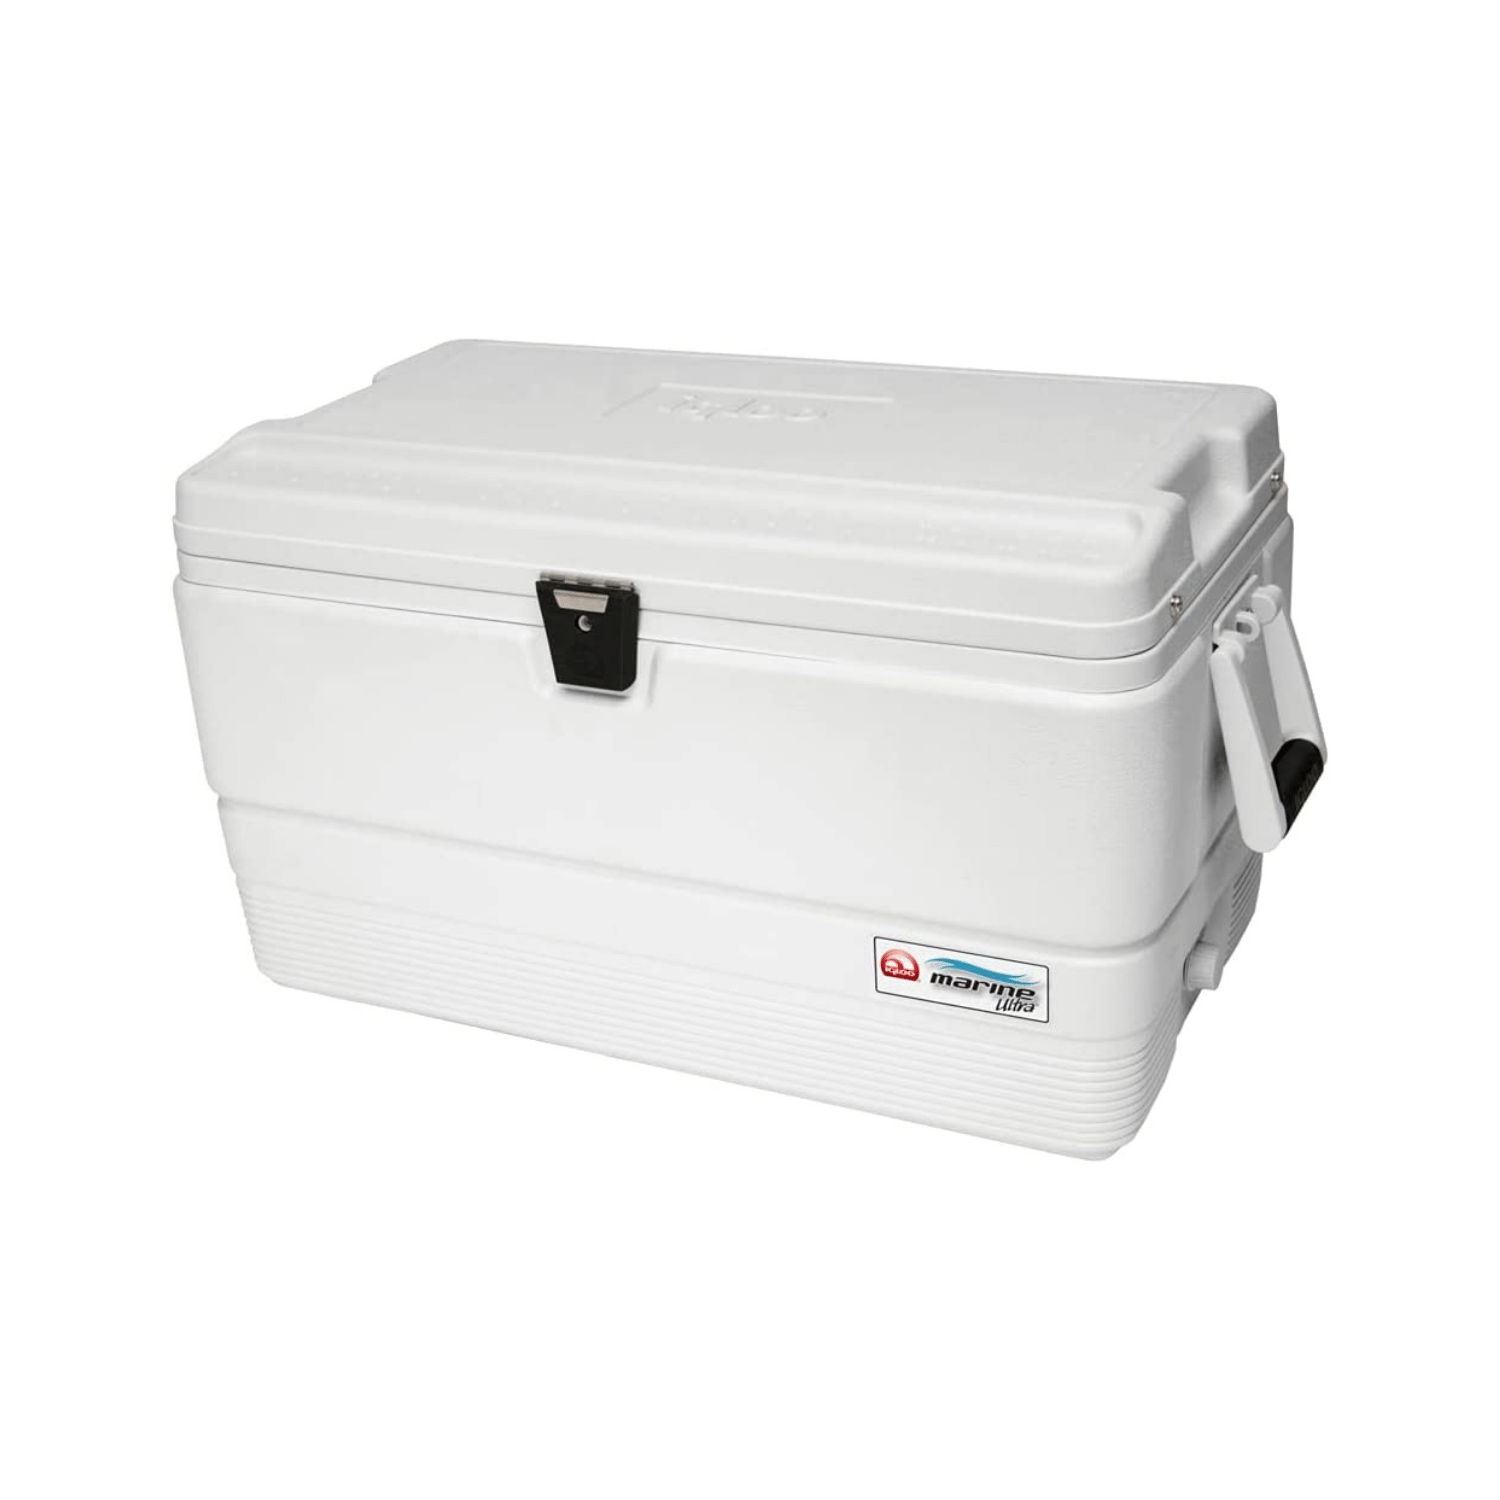 Igloo Marine Ultra Cooler, 72-quart